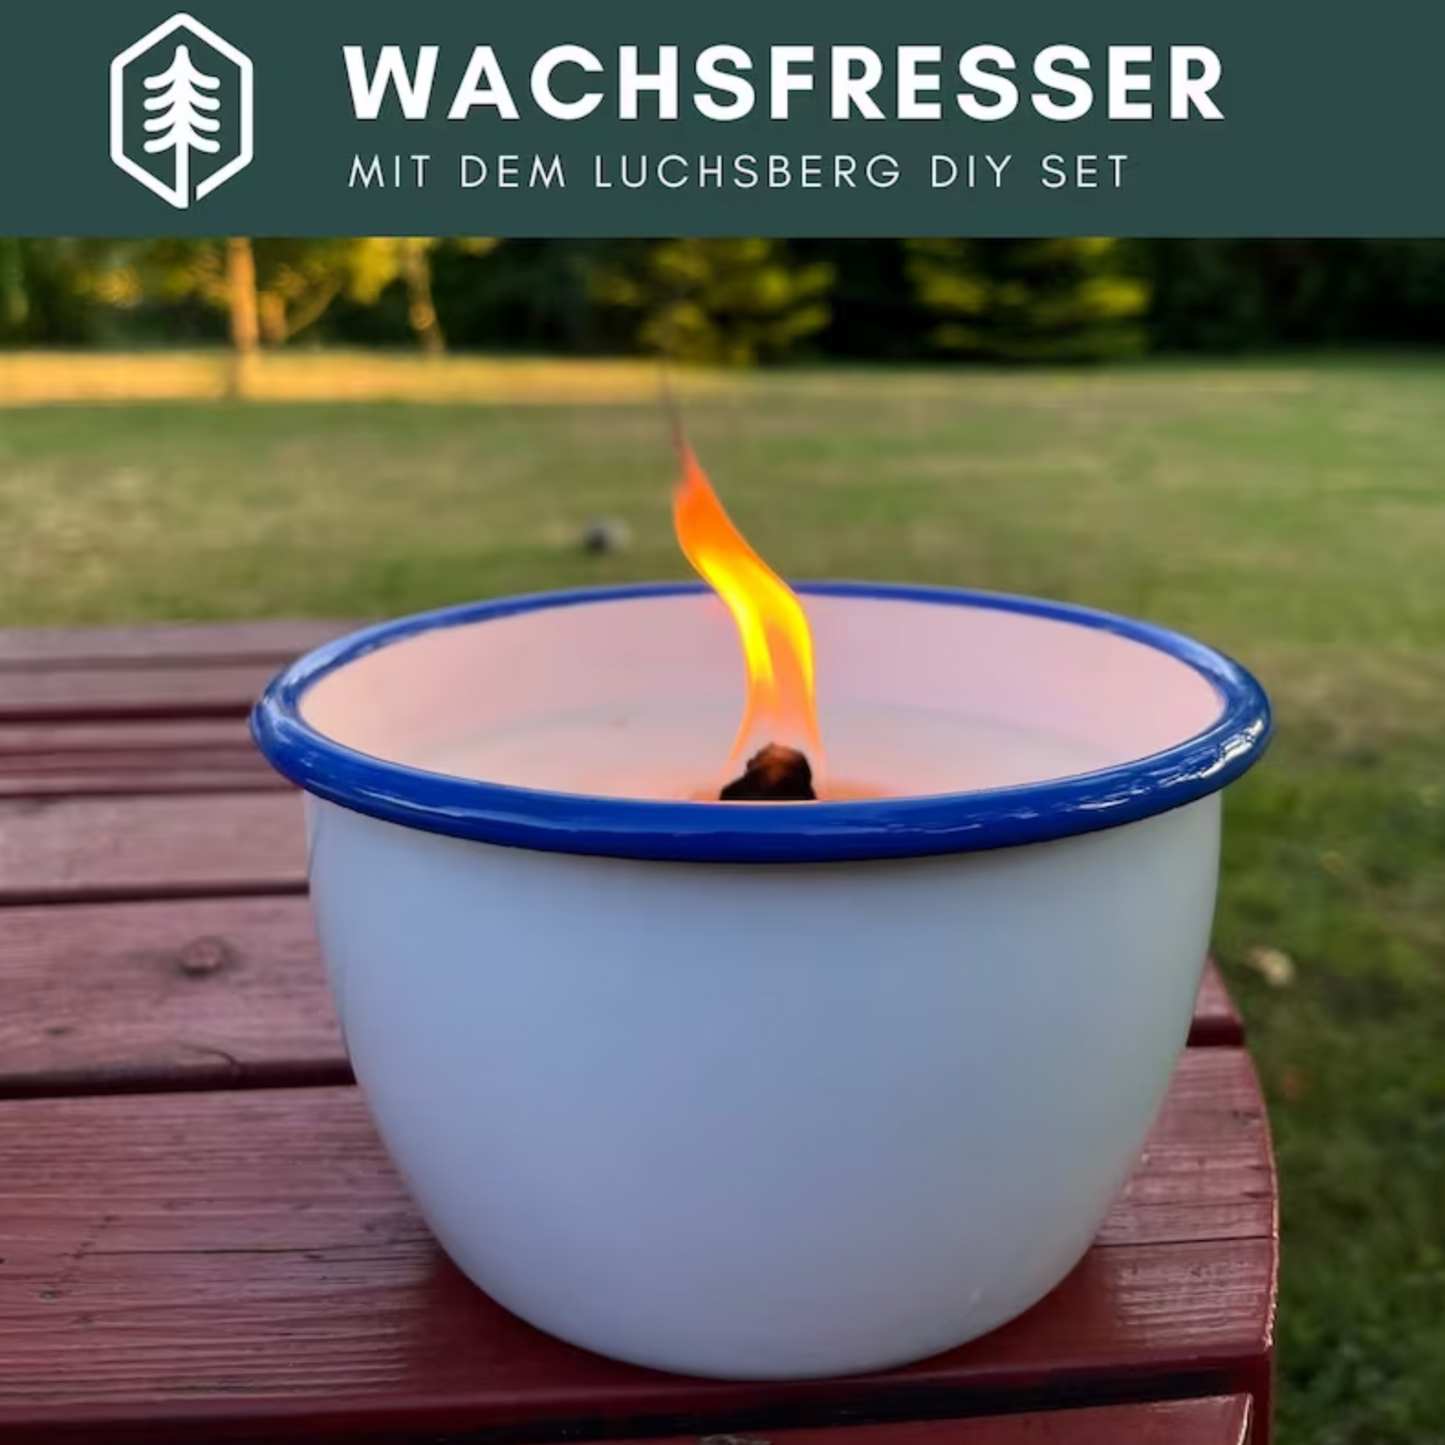 LUCHSBERG® Wachsfresser-Set | Wachsfresser selber machen - 2 x Dauerdocht und Kerzenwachs | DIY Kerzenfresser mit Wachsgranulat